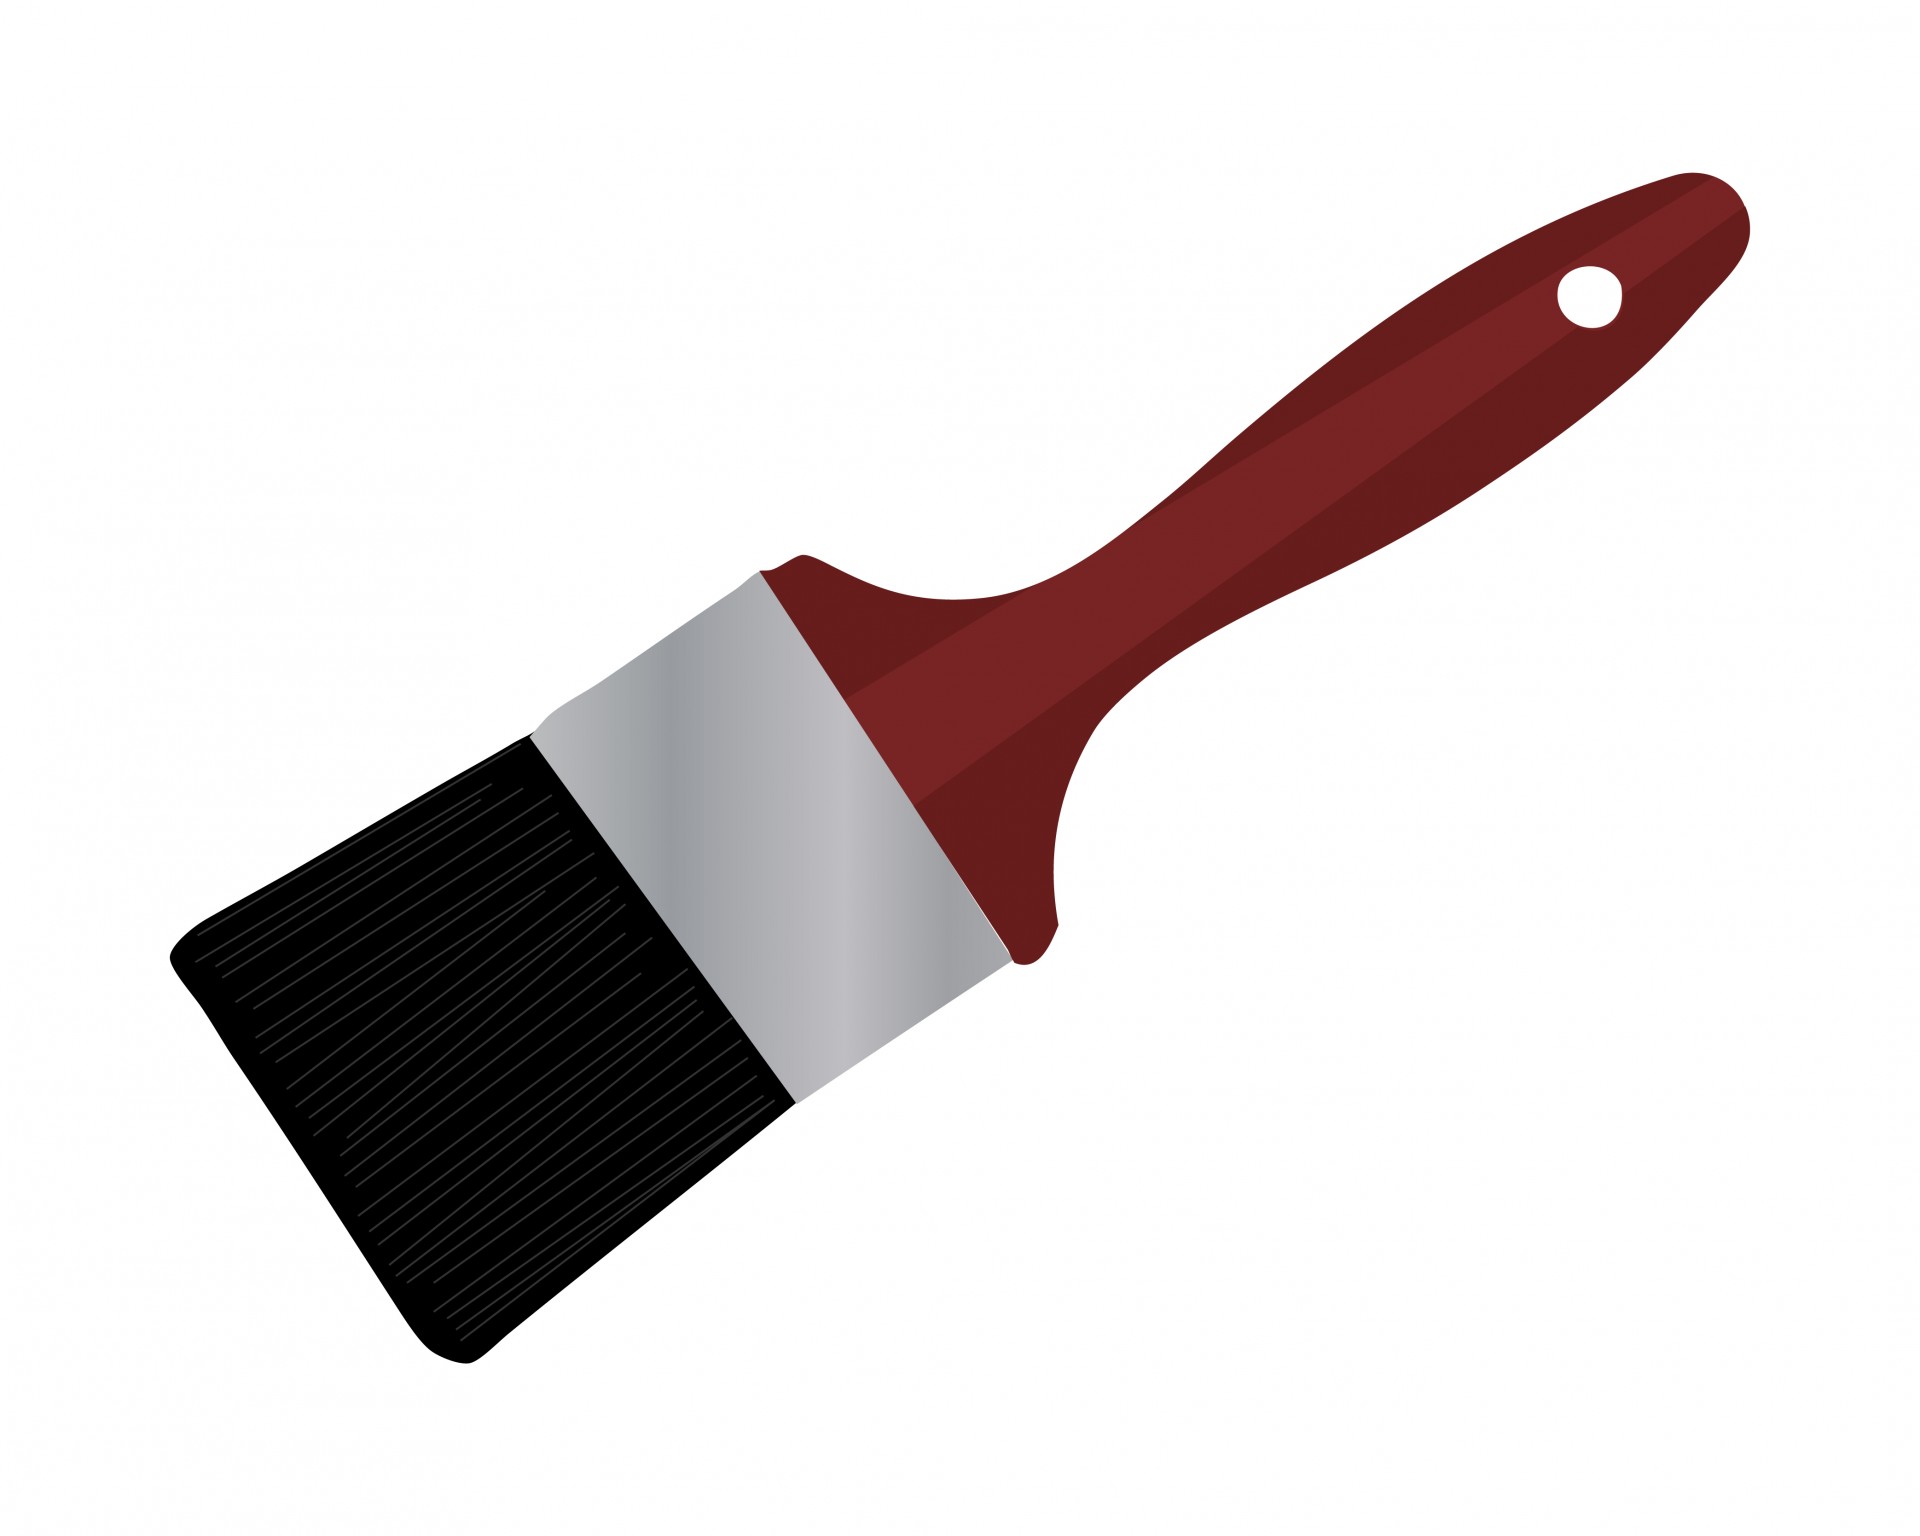 Paintbrush Clip Art - ClipArt